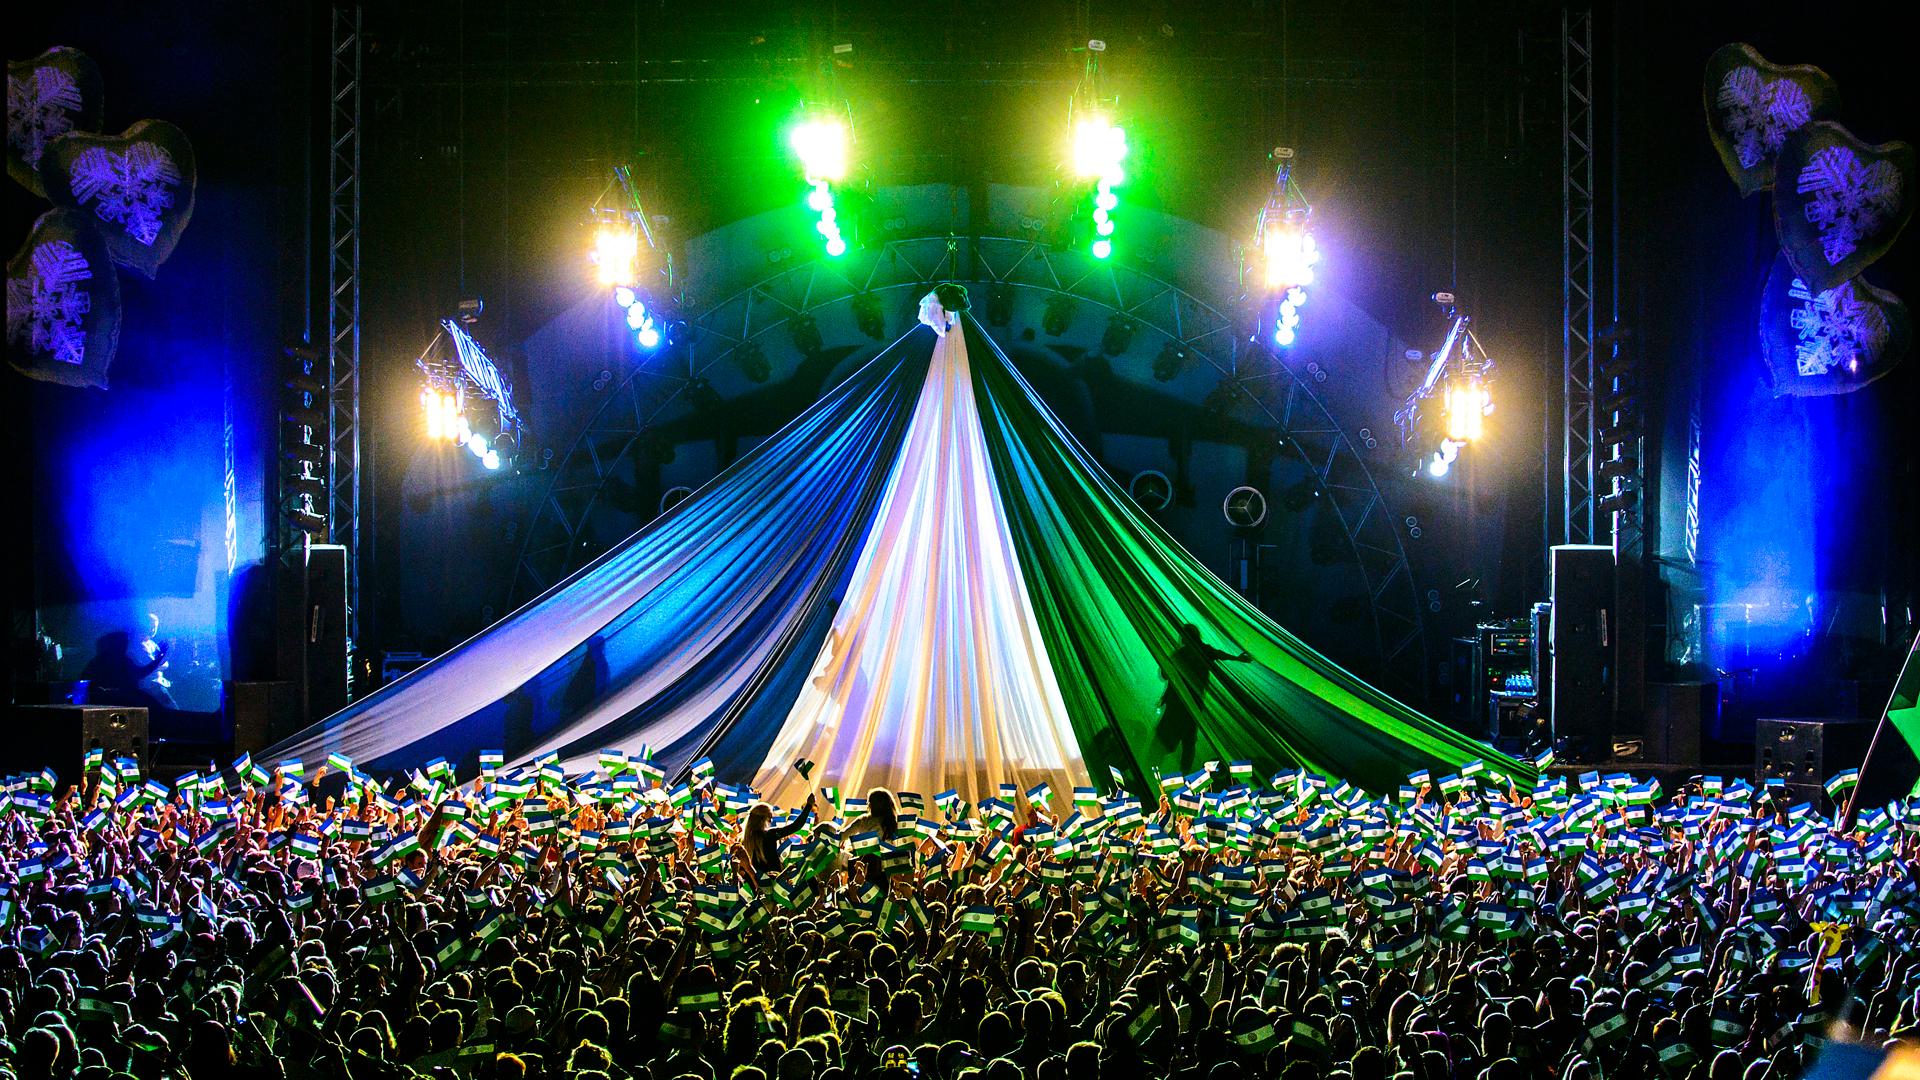 Presidenttalet på scen under Storsjöyran. Ett stort skynke i blått, vitt och grönt hänger över en hel scen och flera lampor lyser i samma färger. Framför scenen syns ett folkhav där många människor håller upp Jämtlandsflaggan.